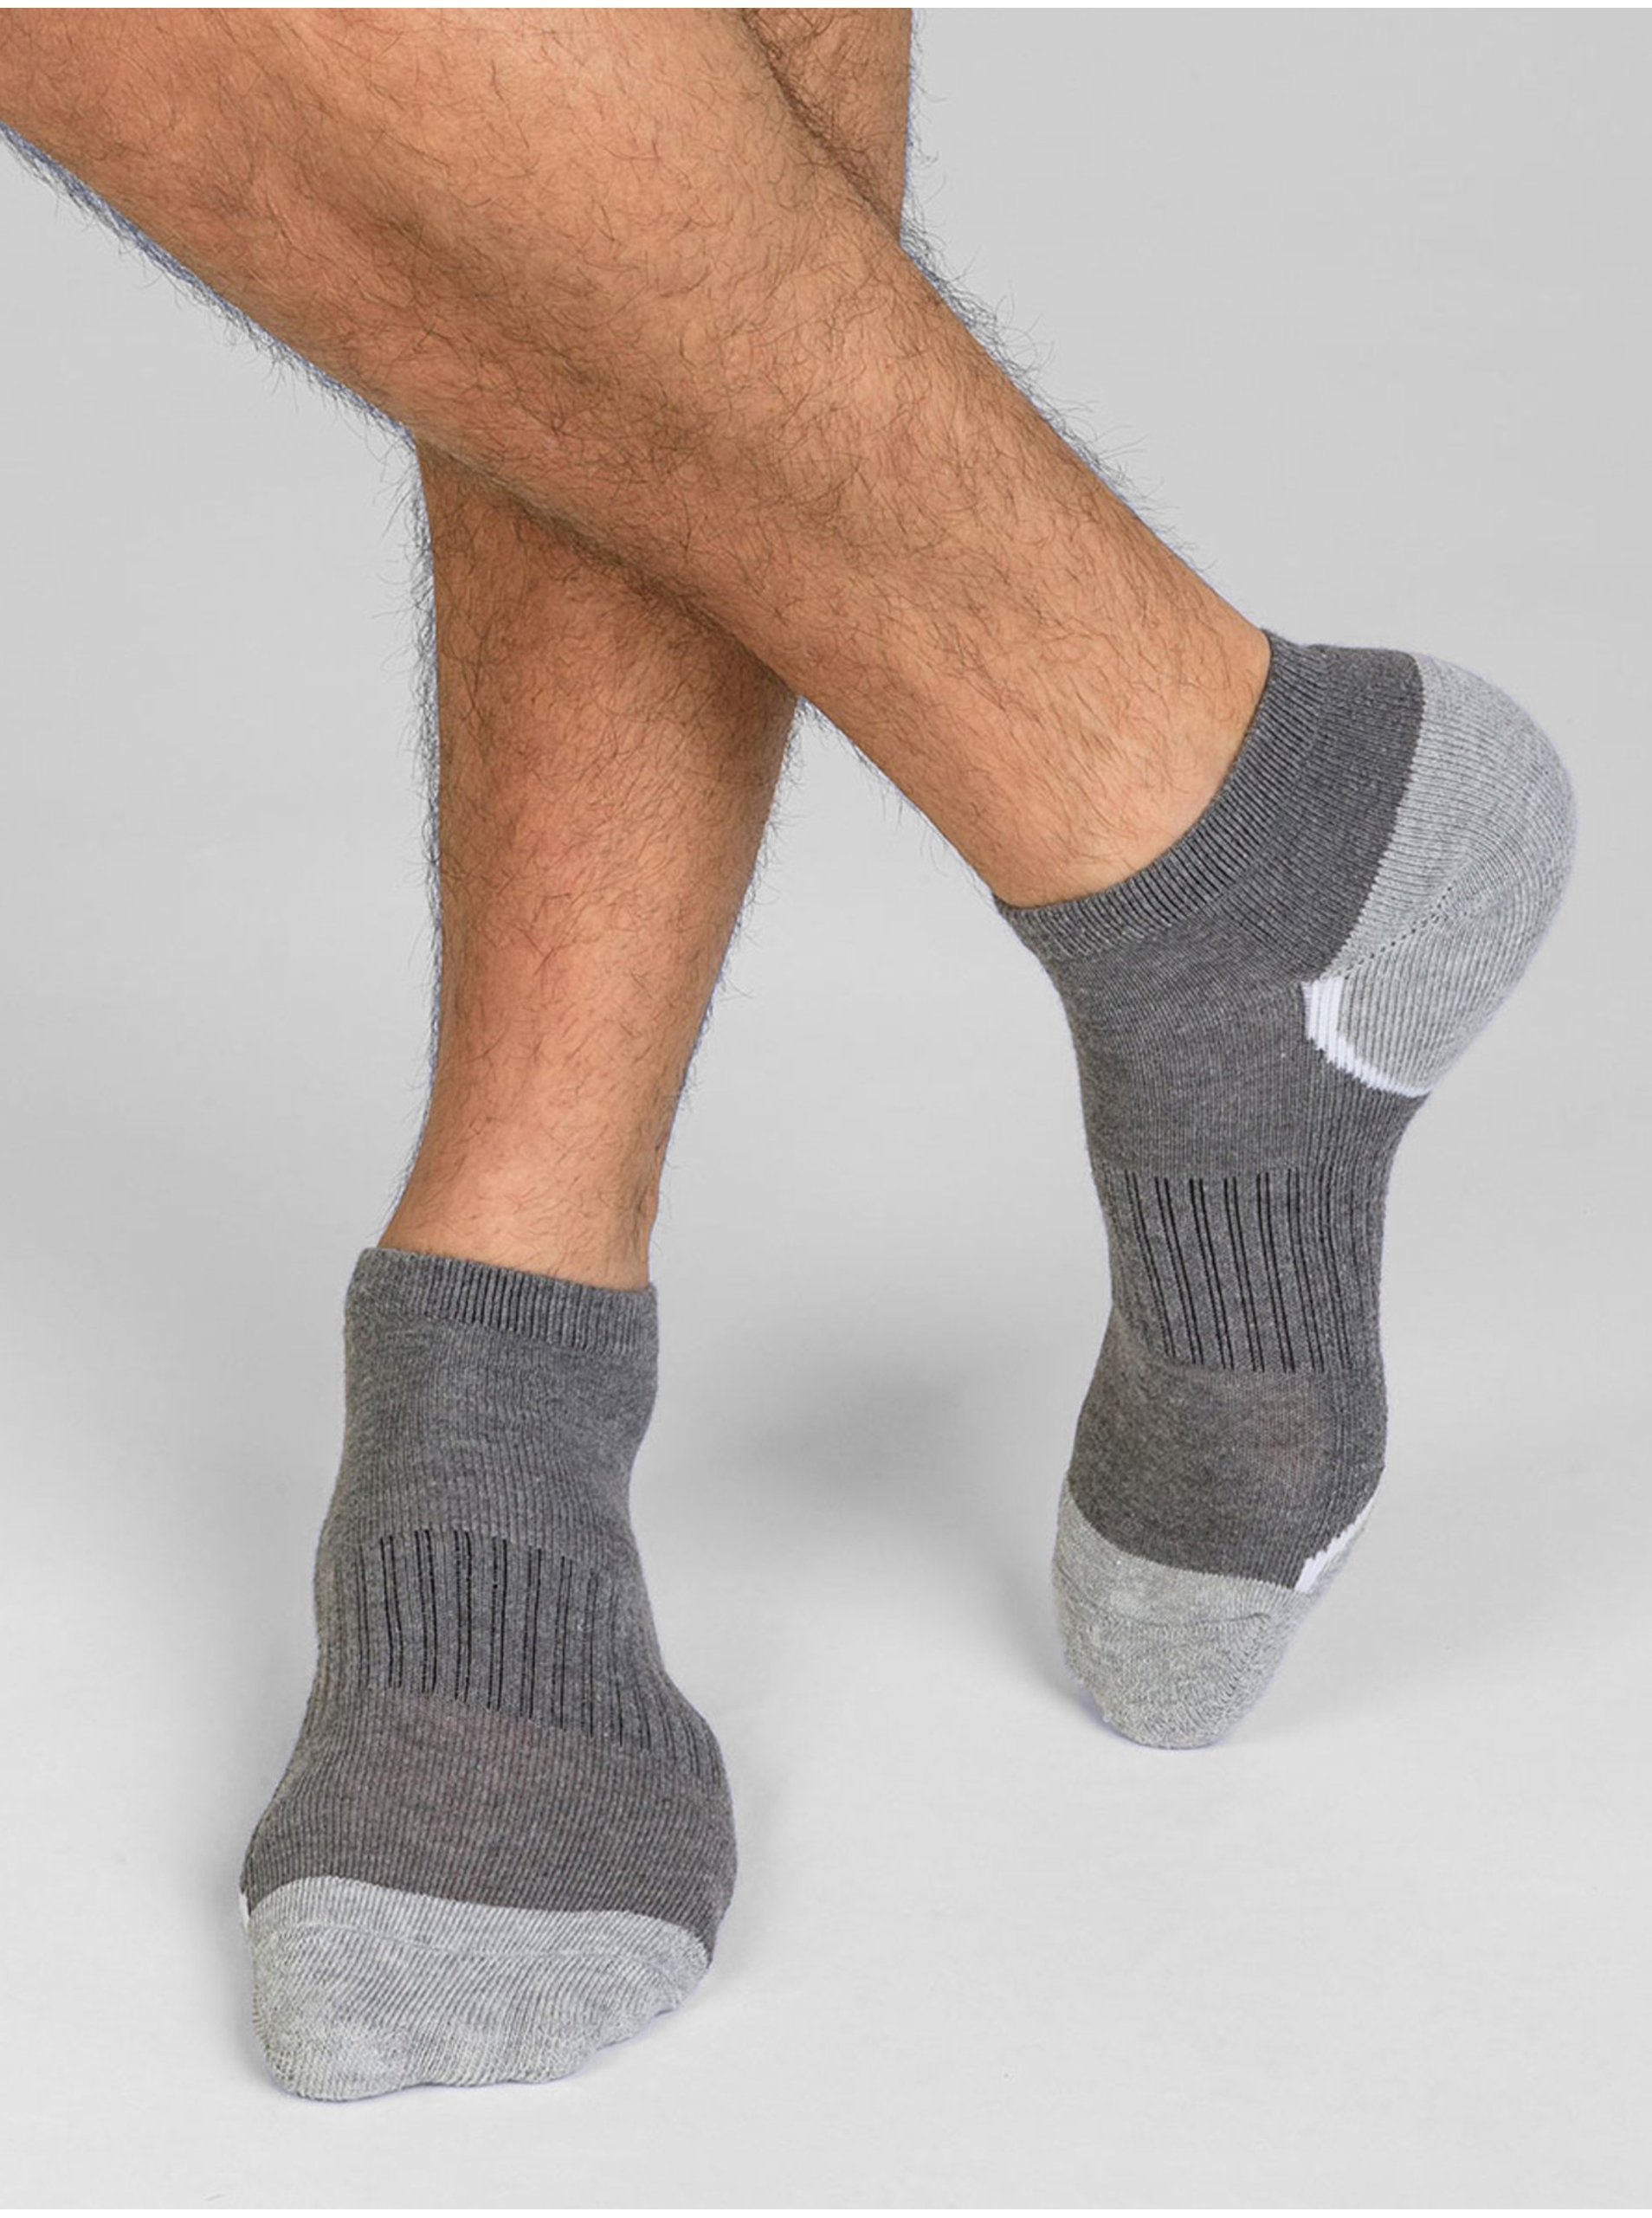 Levně Sada tří párů pánských sportovních ponožek v šedé barvě Dim SPORT IN-SHOE 3x